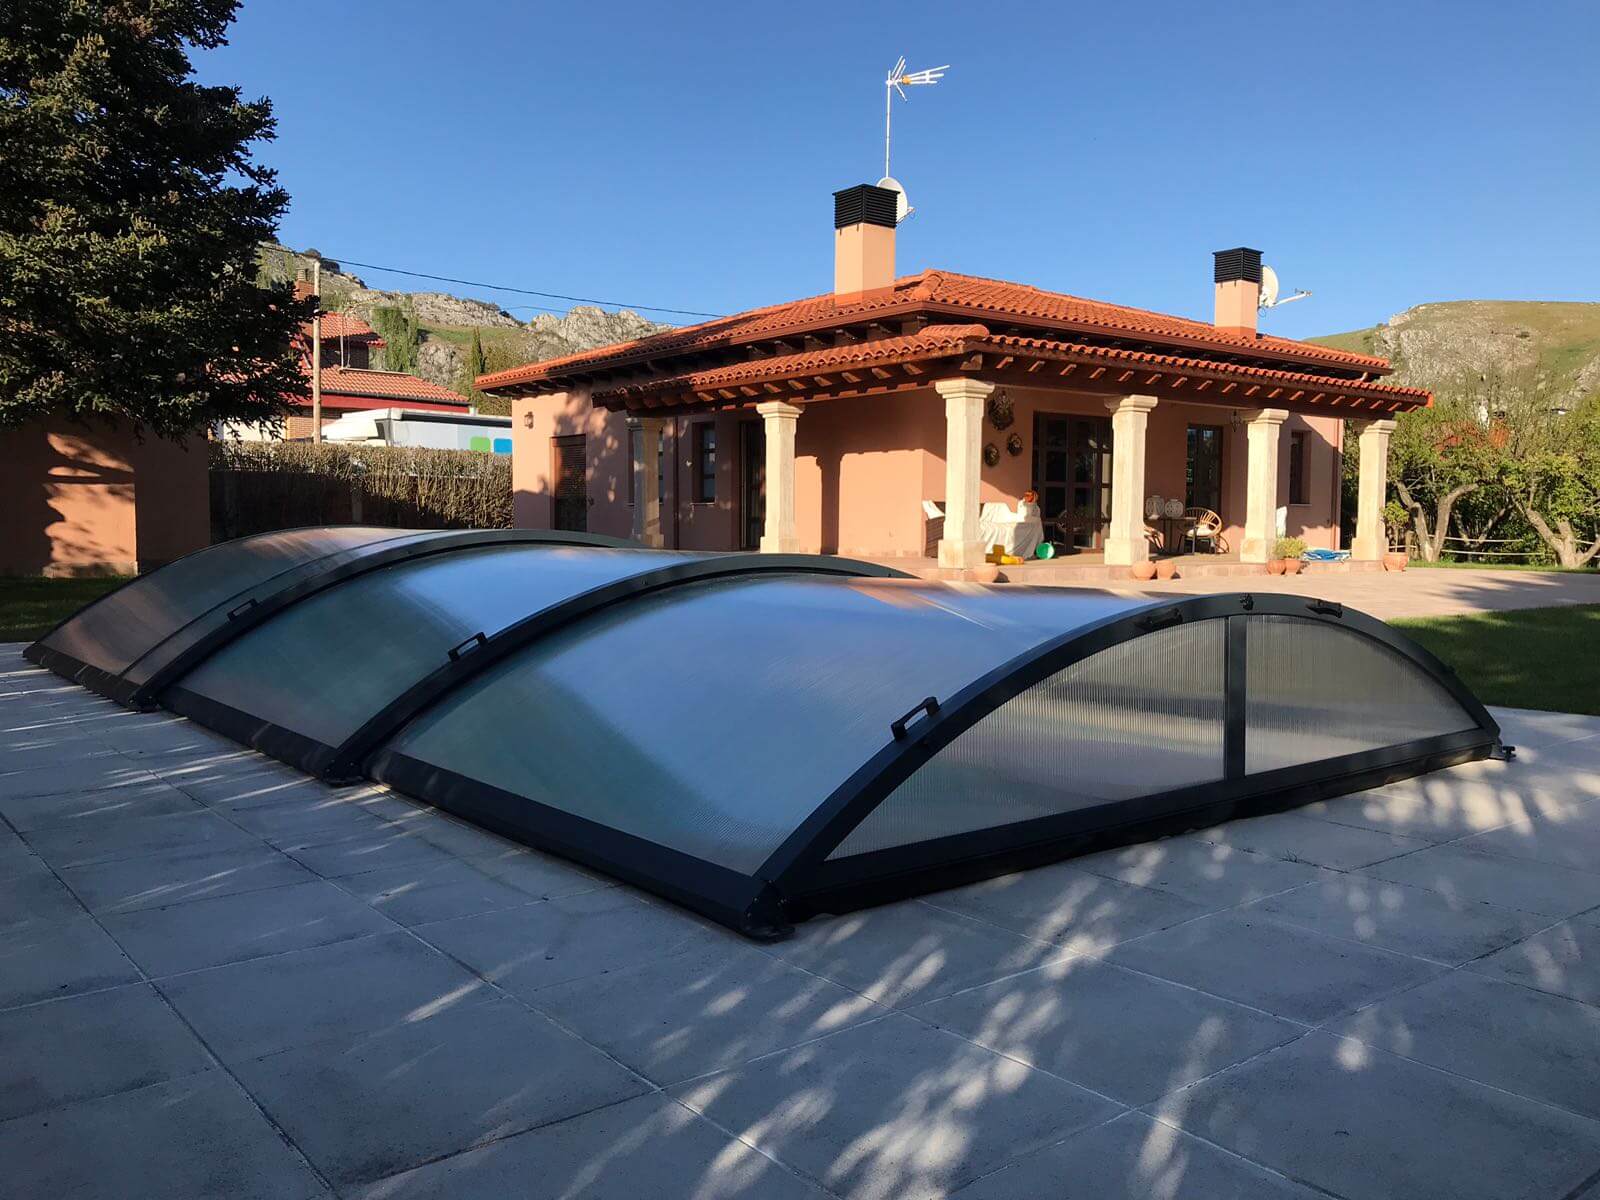 Cubierta Teide: Cerramiento de piscinas baja y telescópica en Burgos exterior